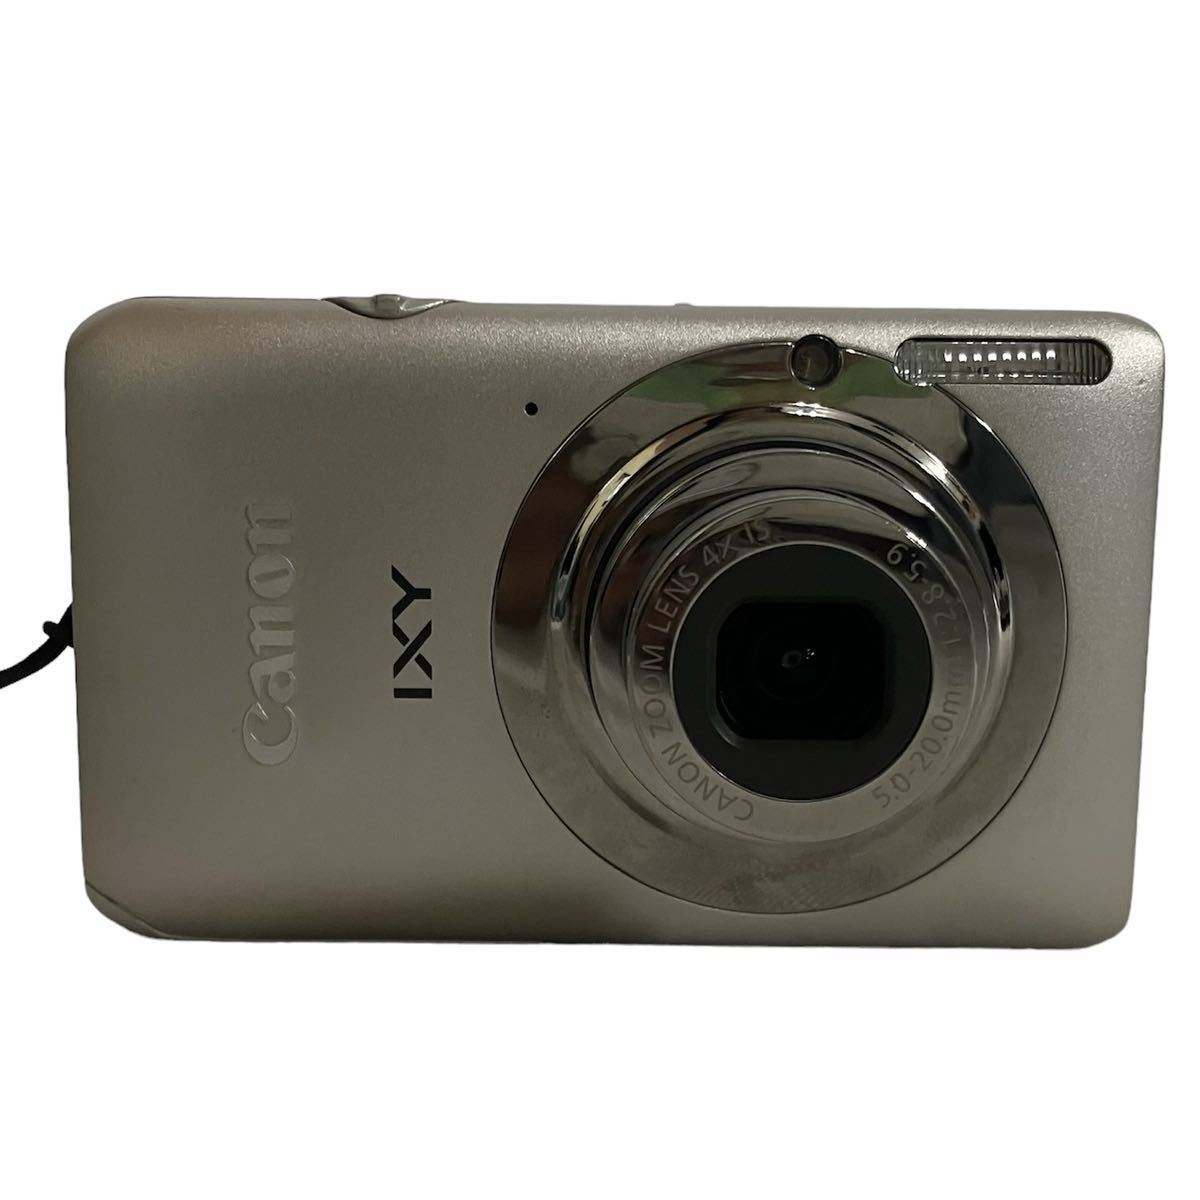 Canon コンパクトデジタルカメラ IXY 210 F PC1588 5.0-20.0mm 1:2.8-5.9 シルバー デジカメ キャノン 本体 イクシー_画像2